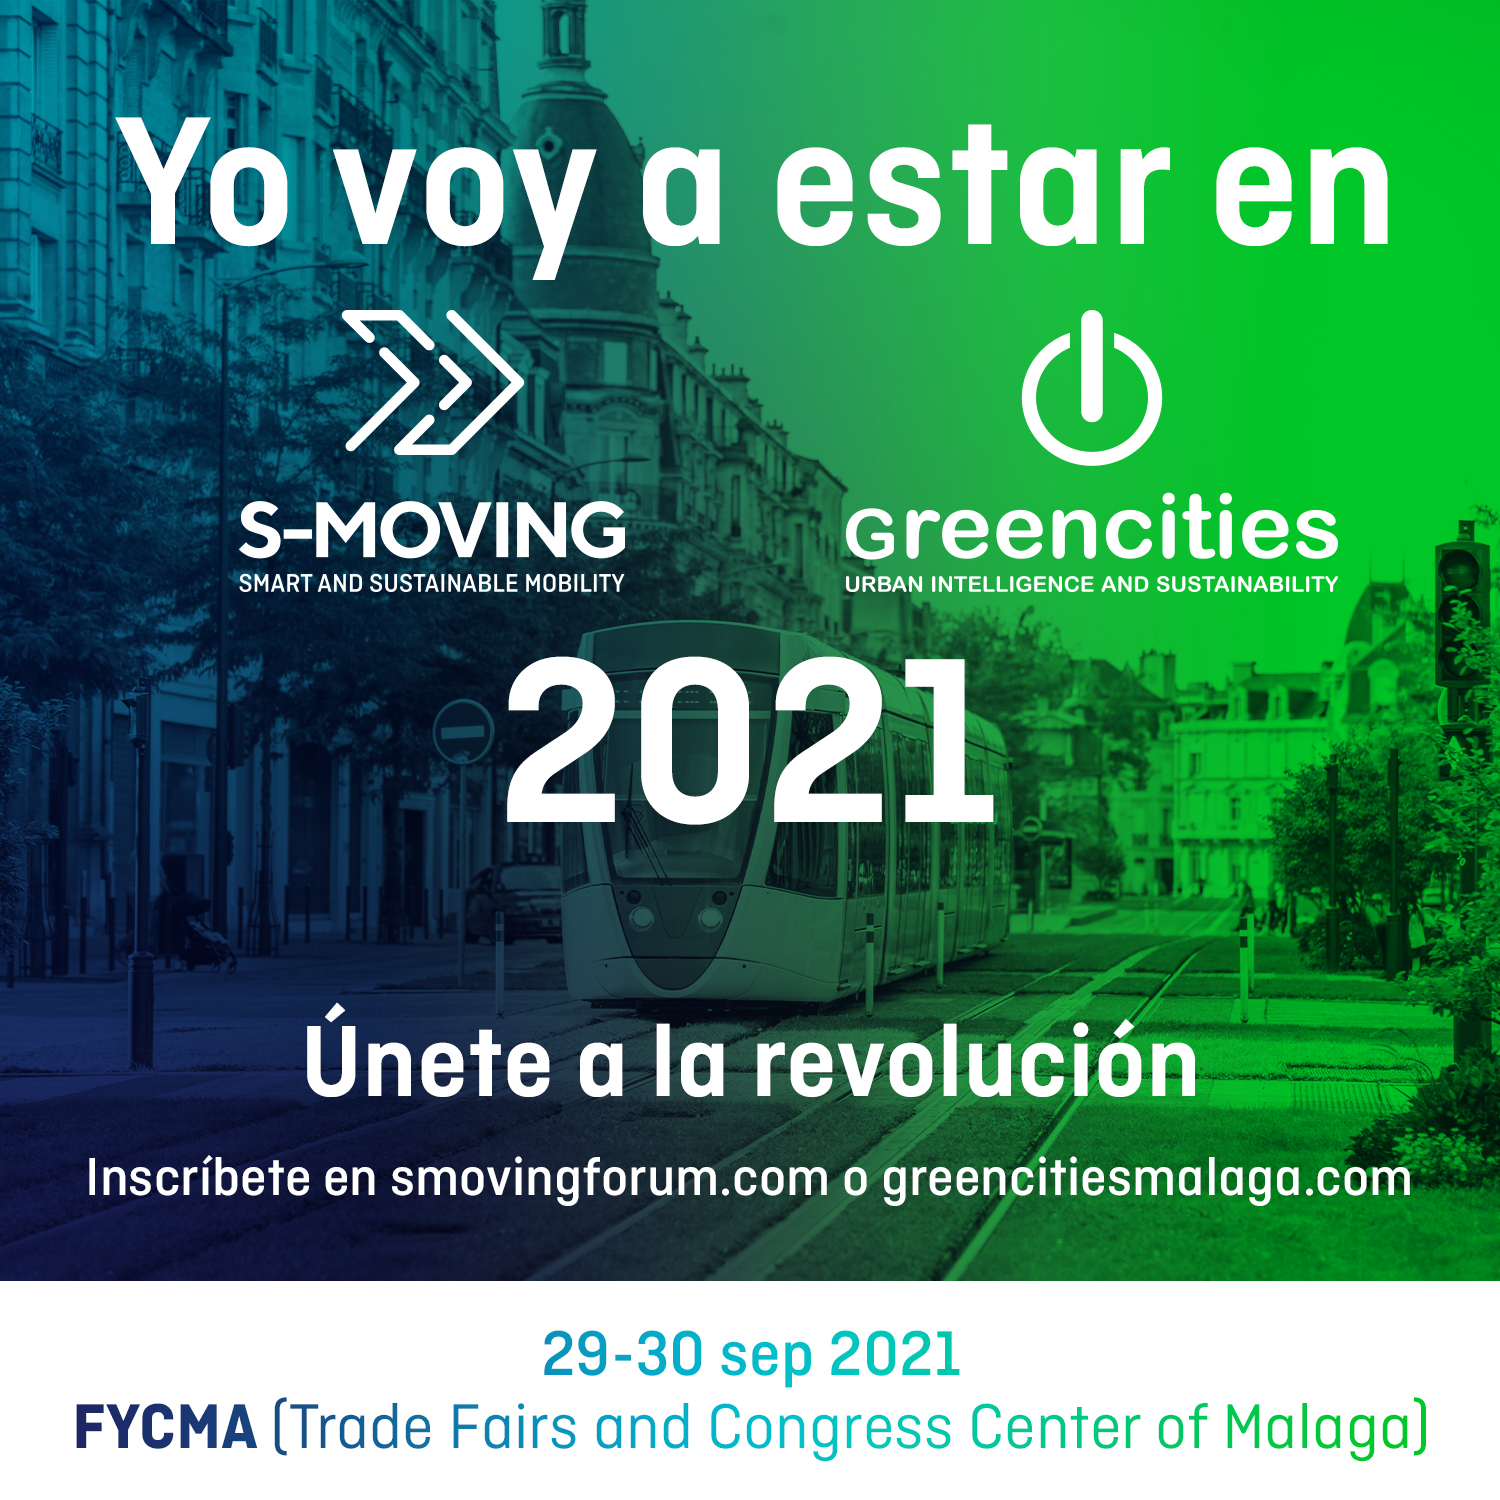 Greencities y S-MOVING 2021 reunirán a más de 70 ciudades españolas que están liderando el cambio hacia las urbes y la movilidad del futuro